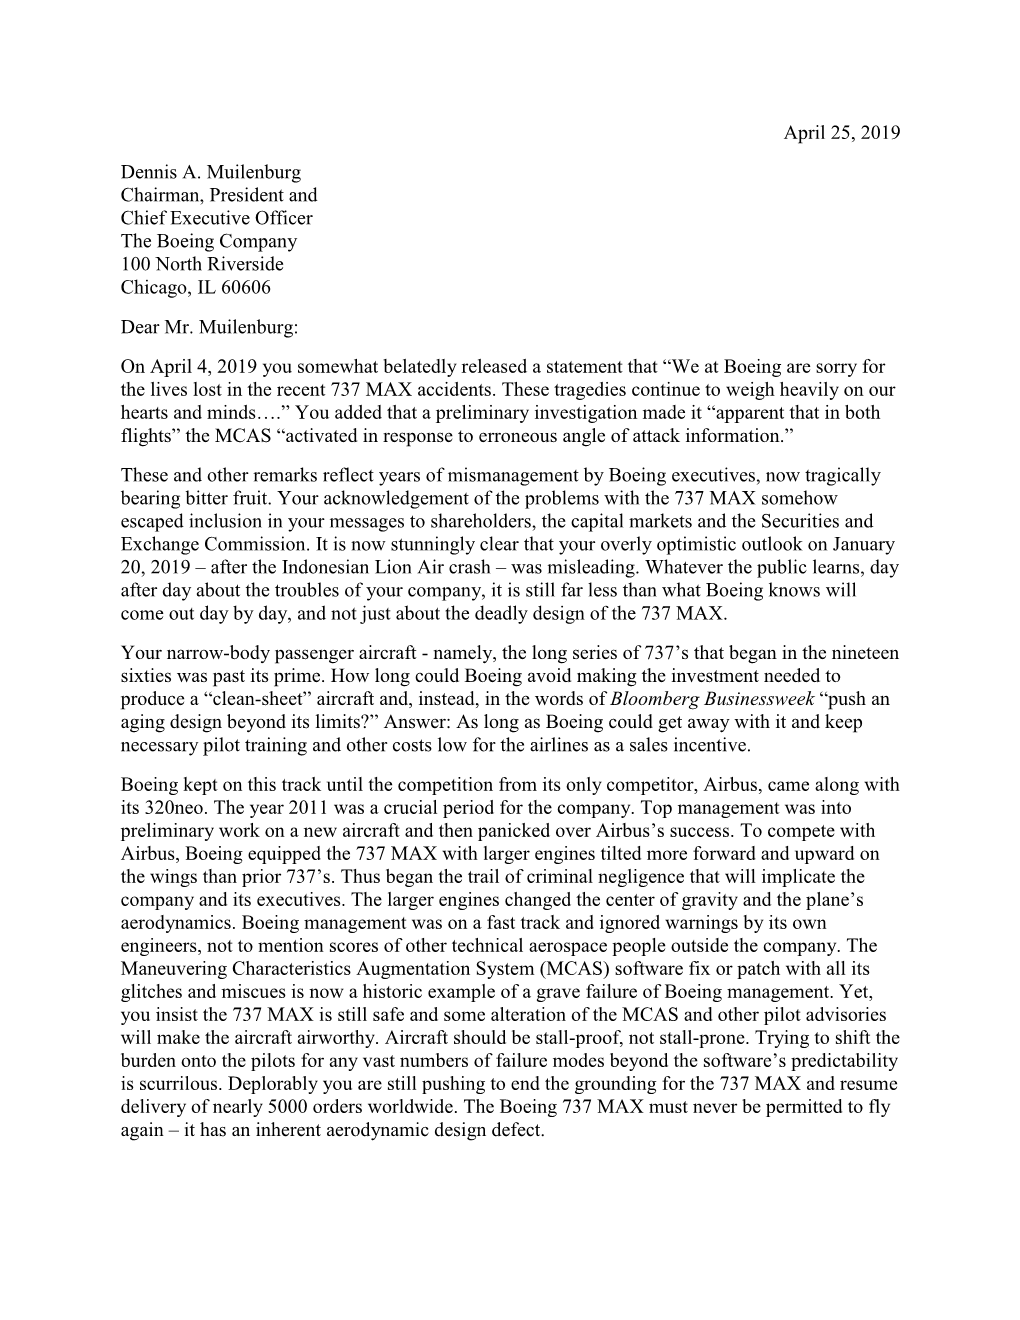 RN Letter to Dennis Muilenburg CEO Boeing